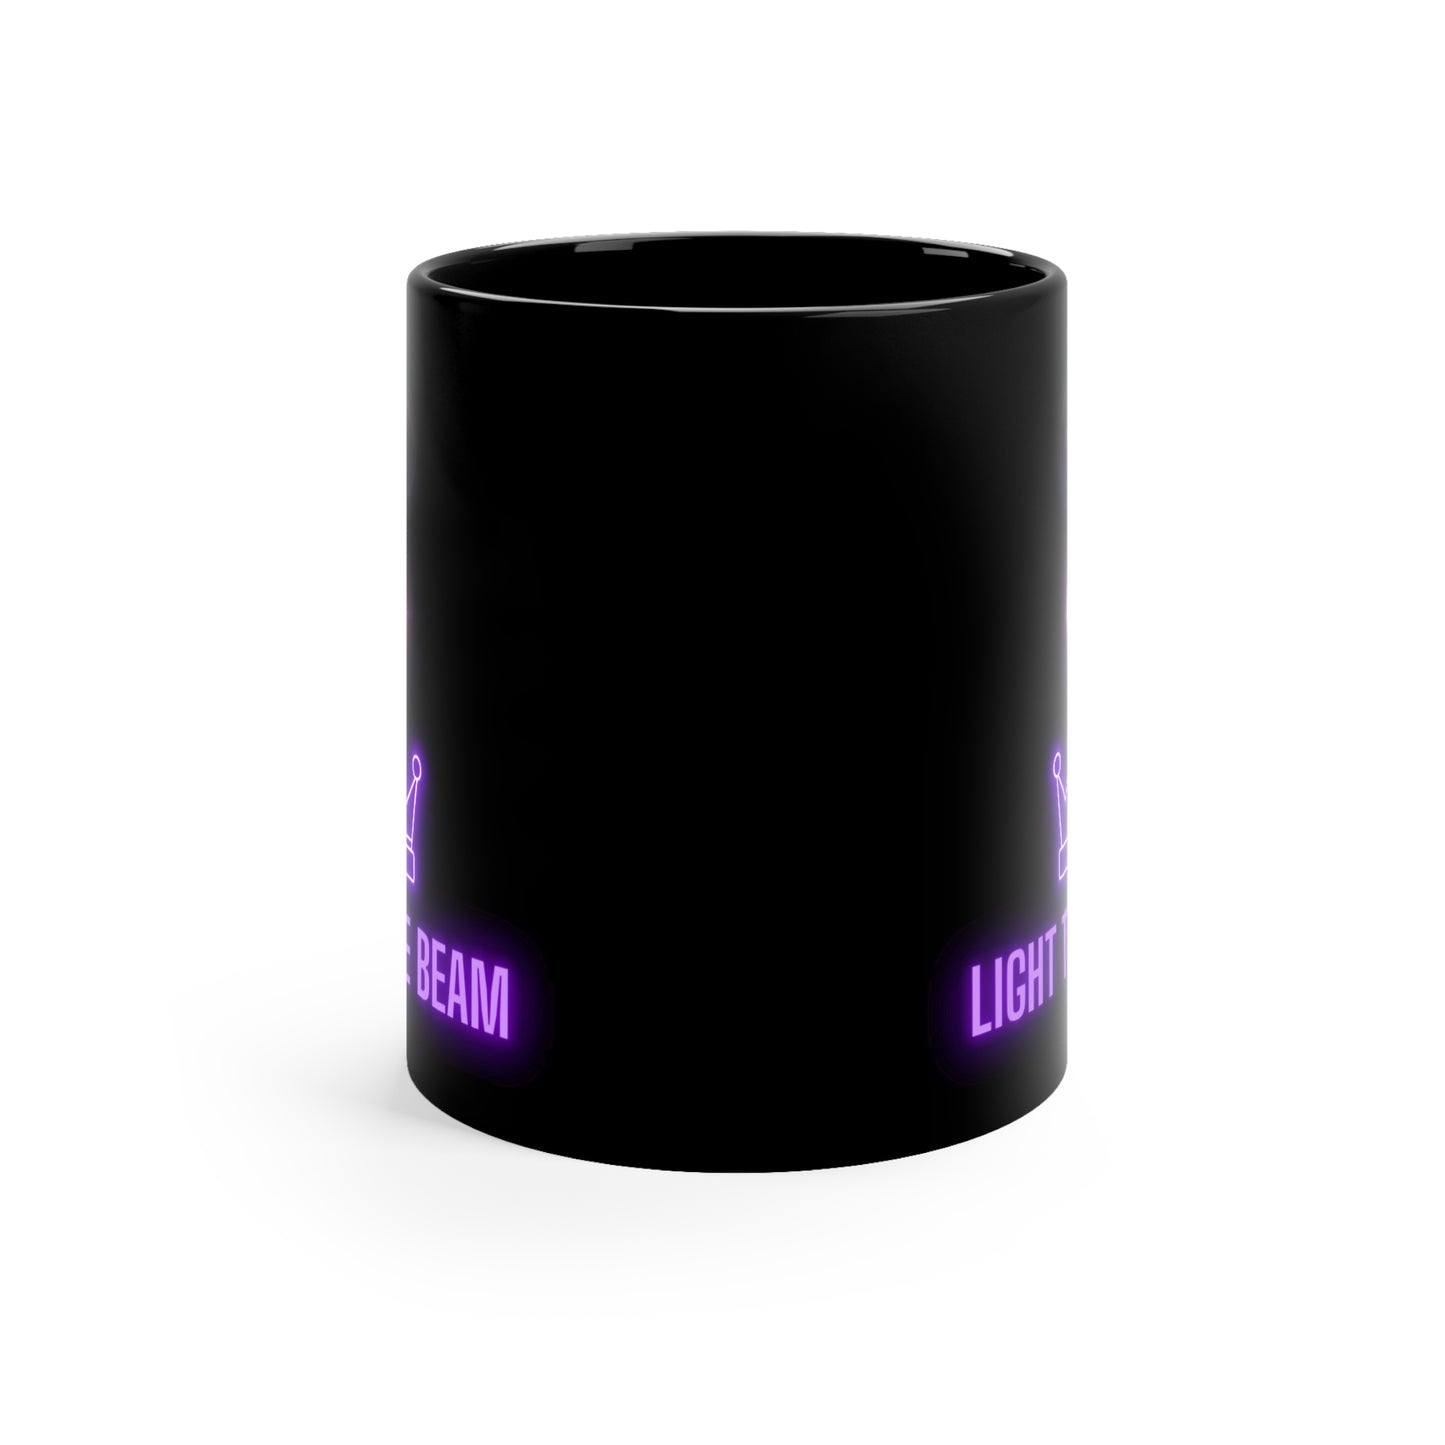 Light the Beam 11 oz mug